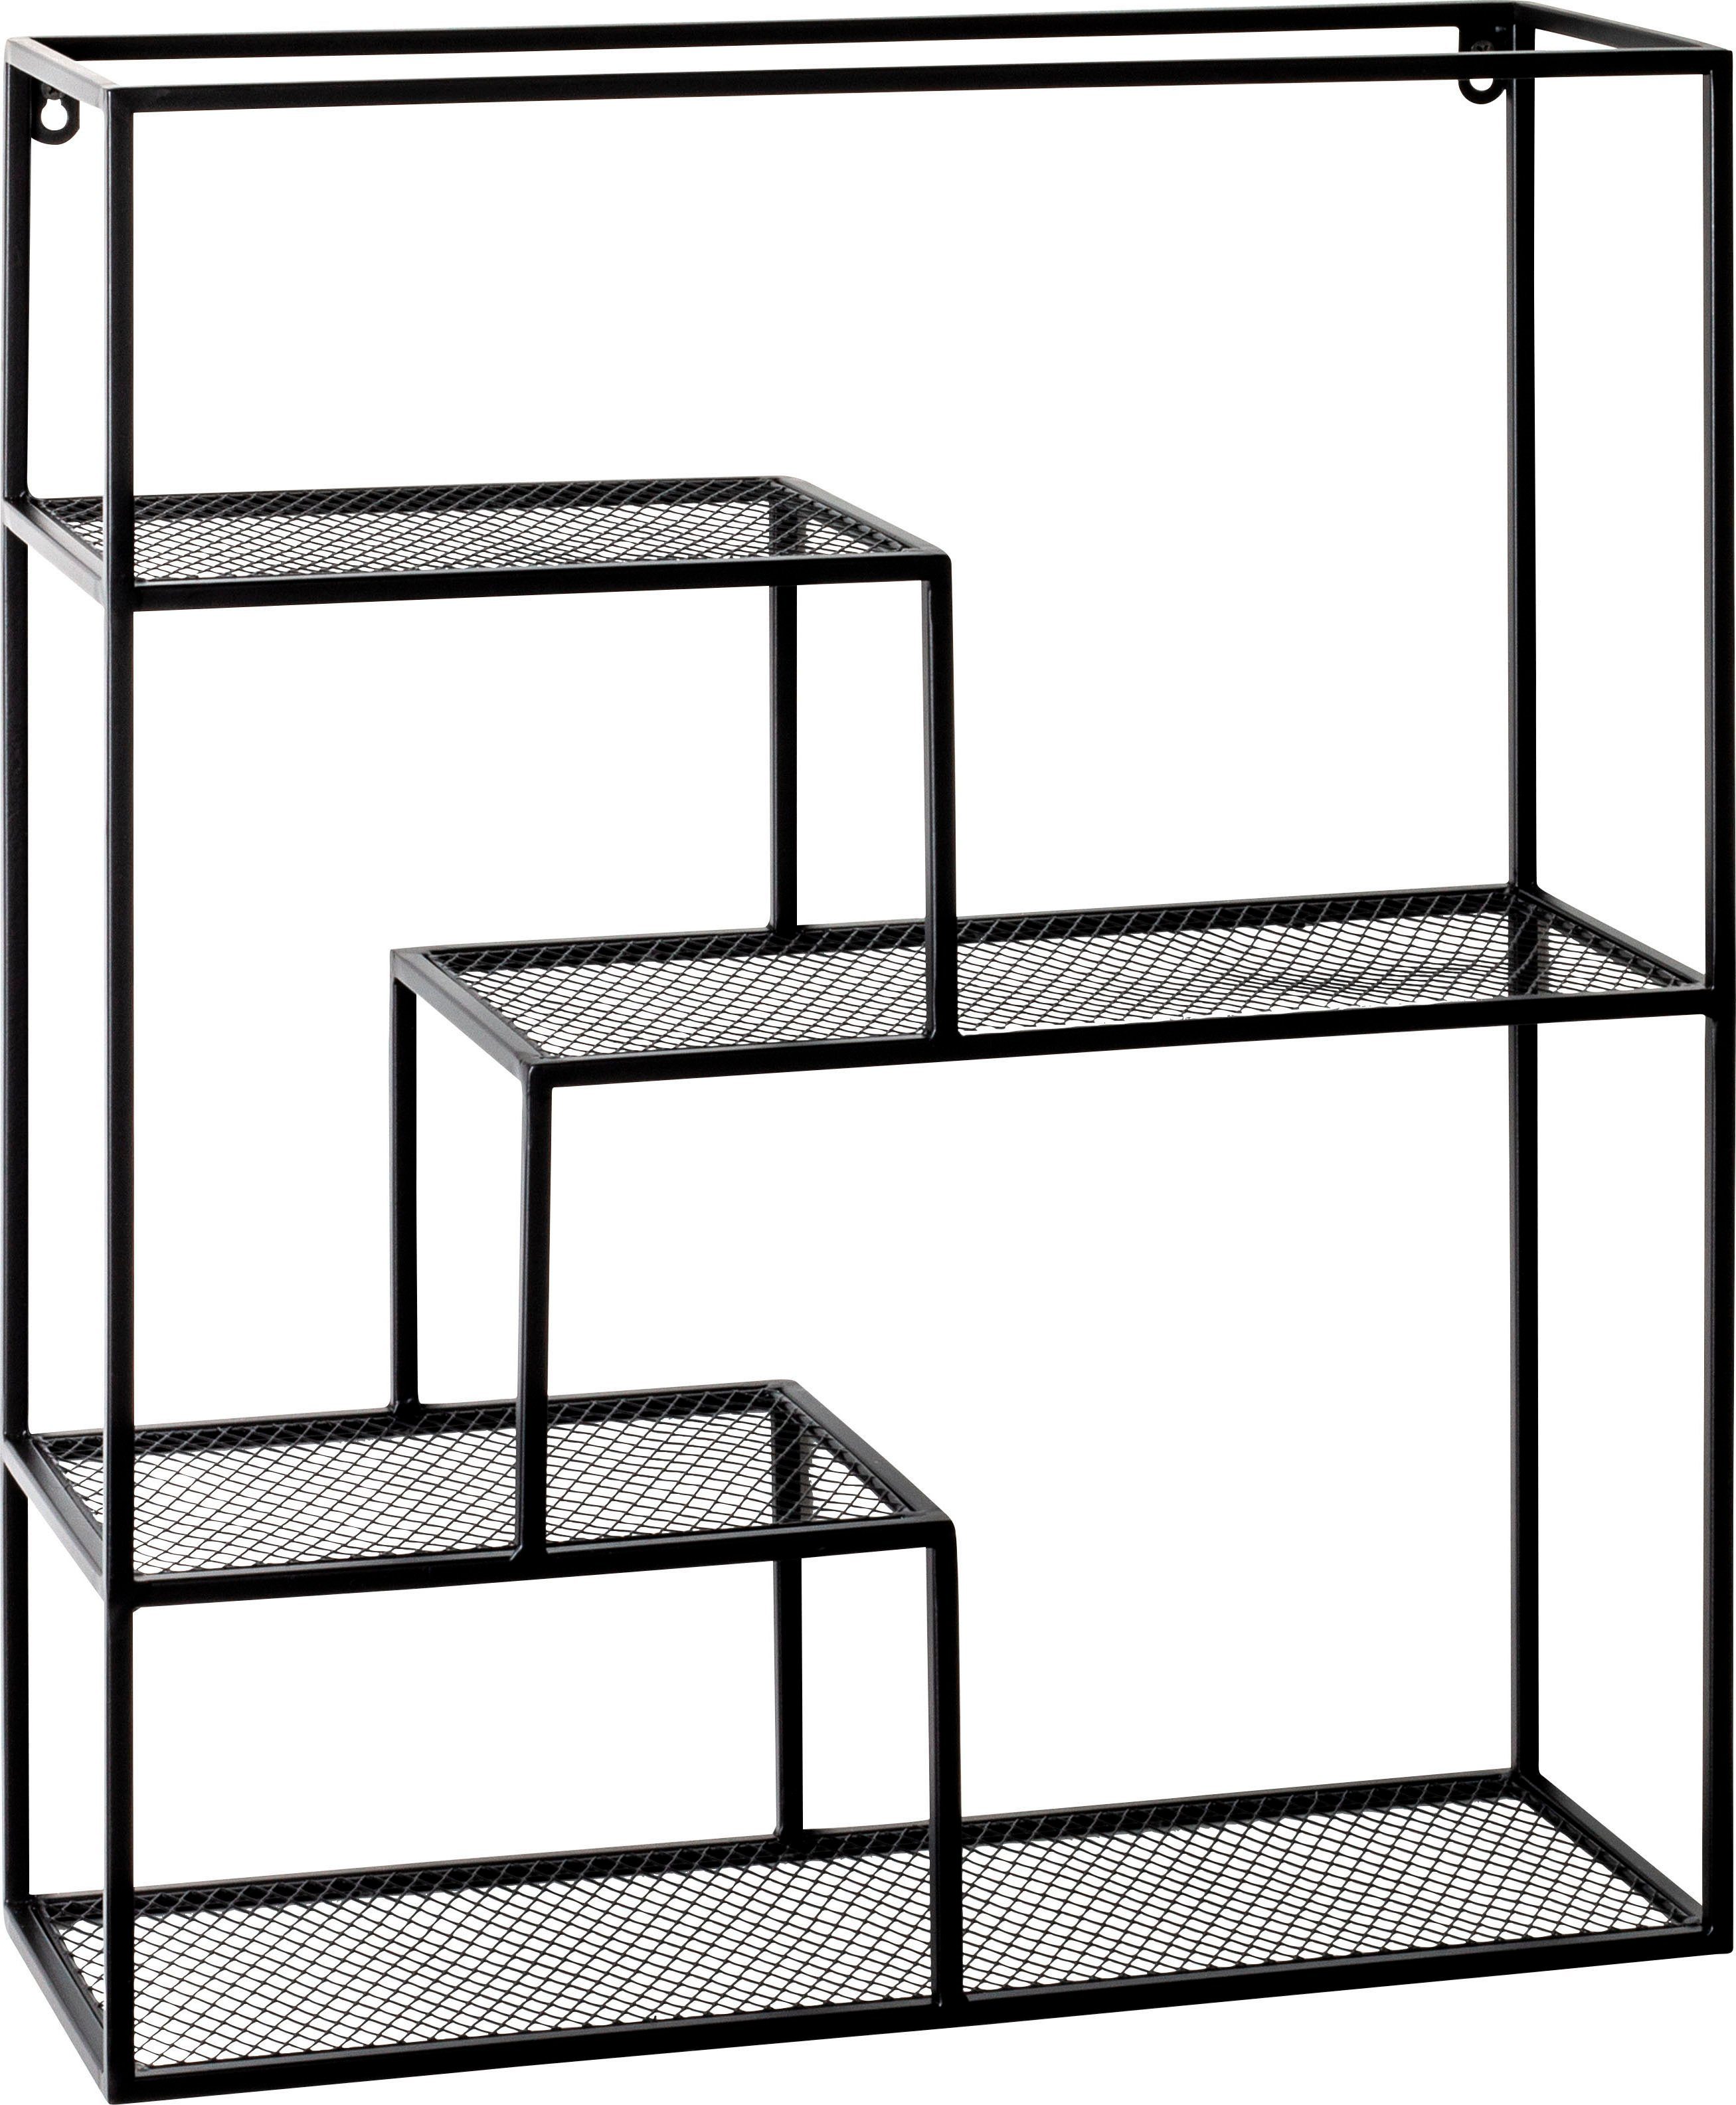 HAKU Wandregal Wandregal, HAKU Möbel Wandregal (BHT 50x60x18 cm) BHT  50x60x18 cm schwarz, Ablagen aus Metallgeflecht, schwarz lackiert